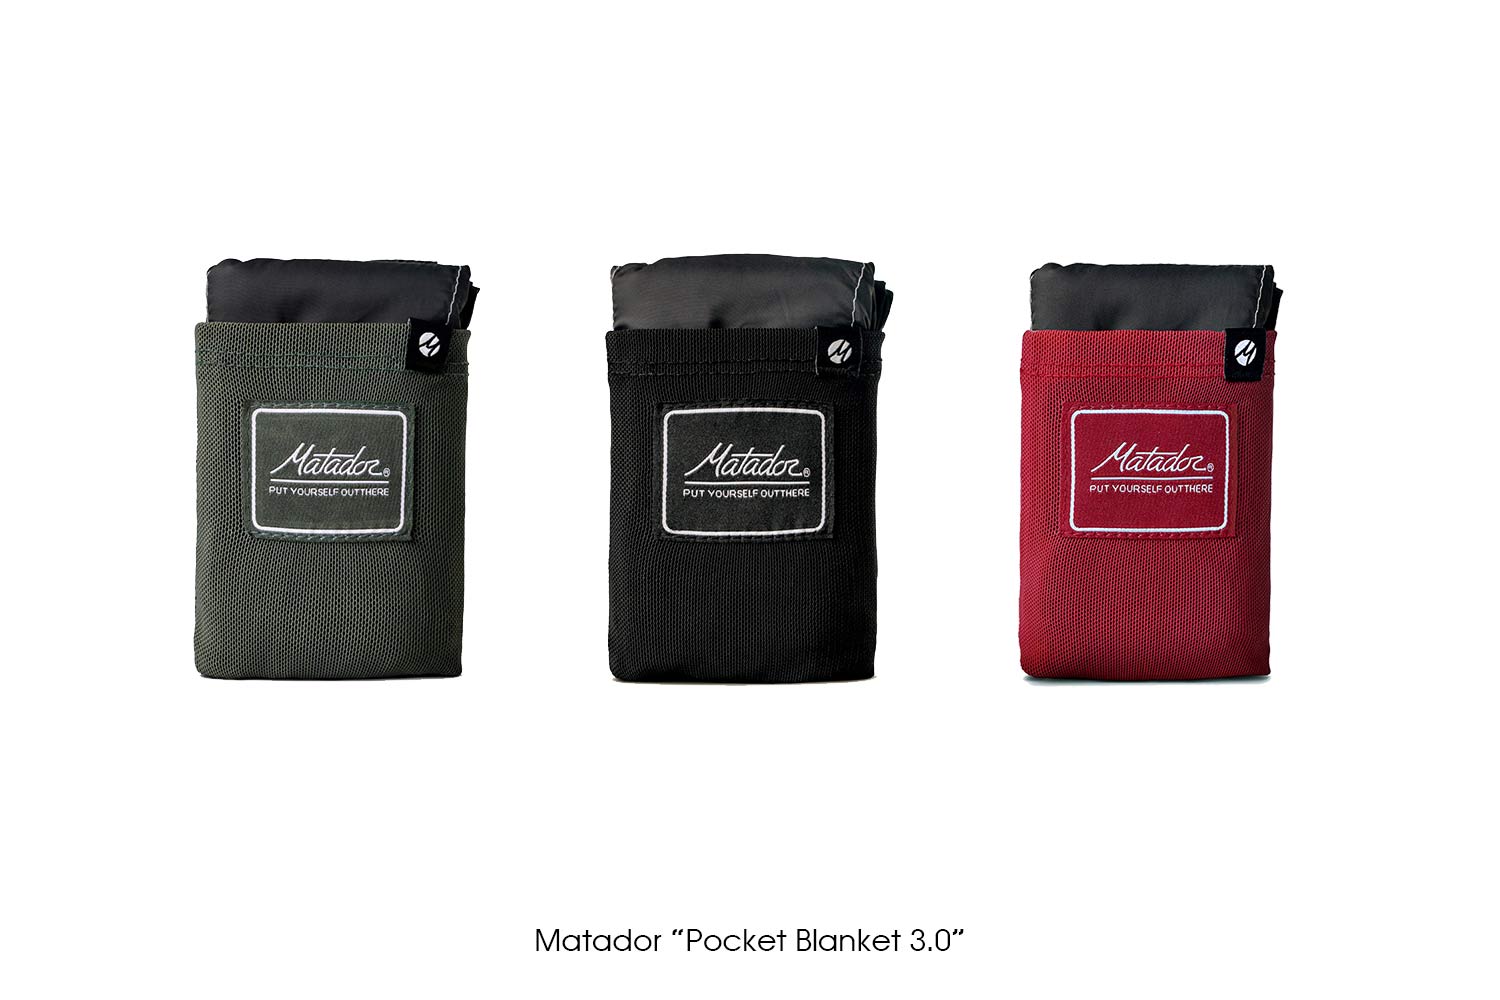 Matador "Pocket Blanket 3.0"